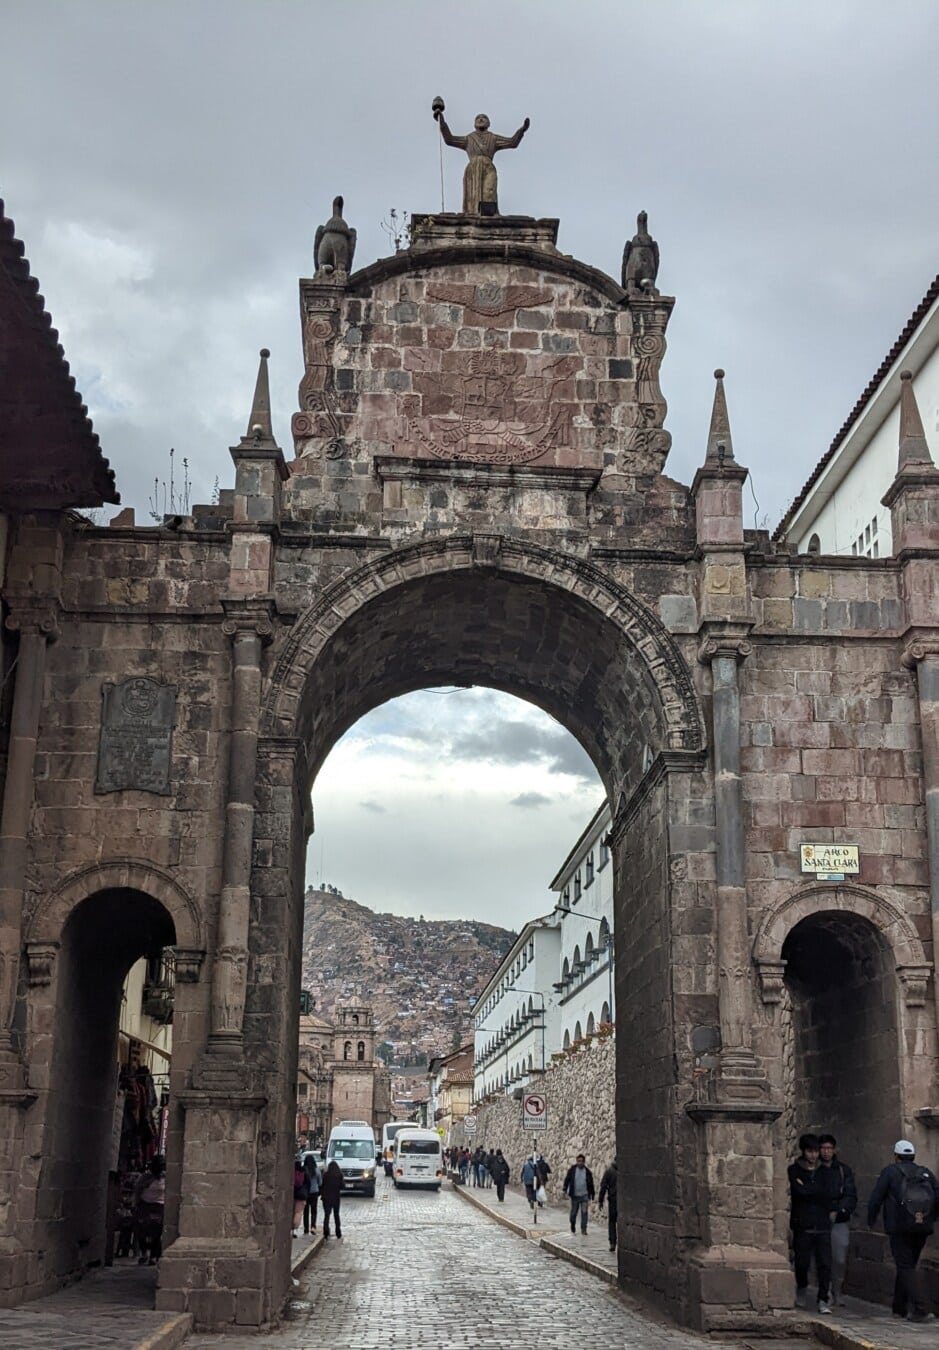 Brána, oblouk, Peru, klášter, ulice, centrum města, středověké, památník, architektura, staré